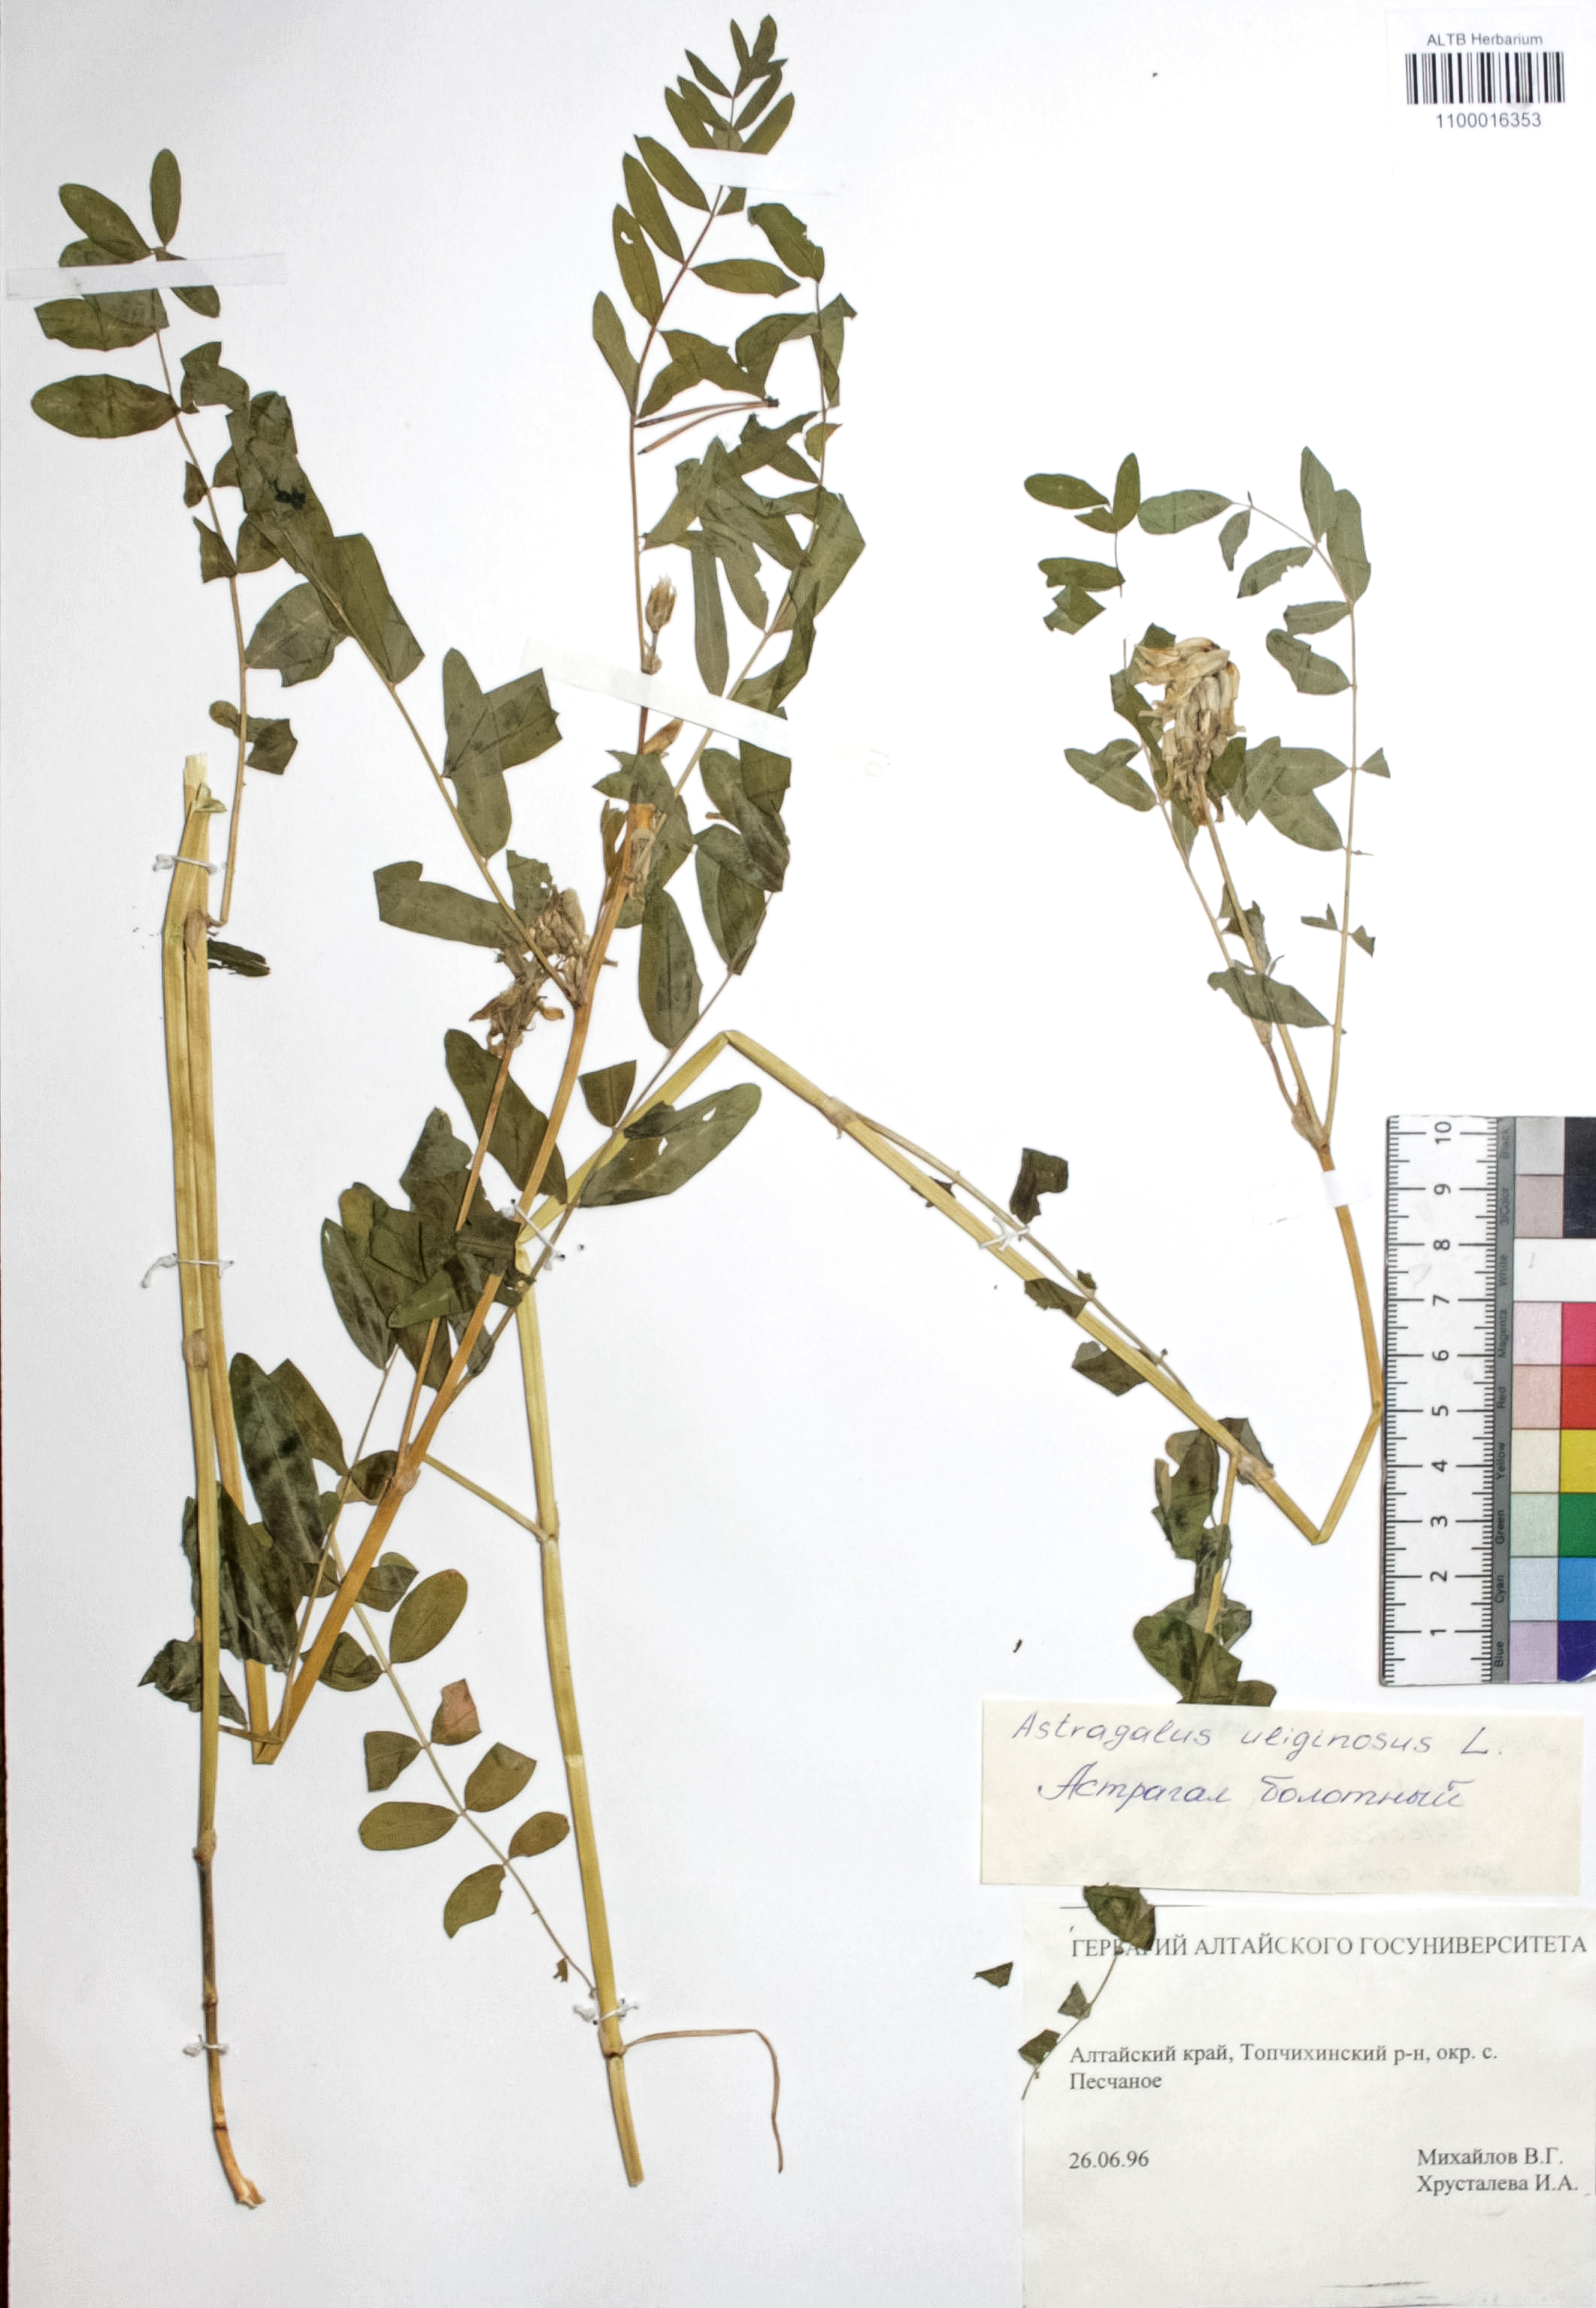 Astragalus uliginosus L